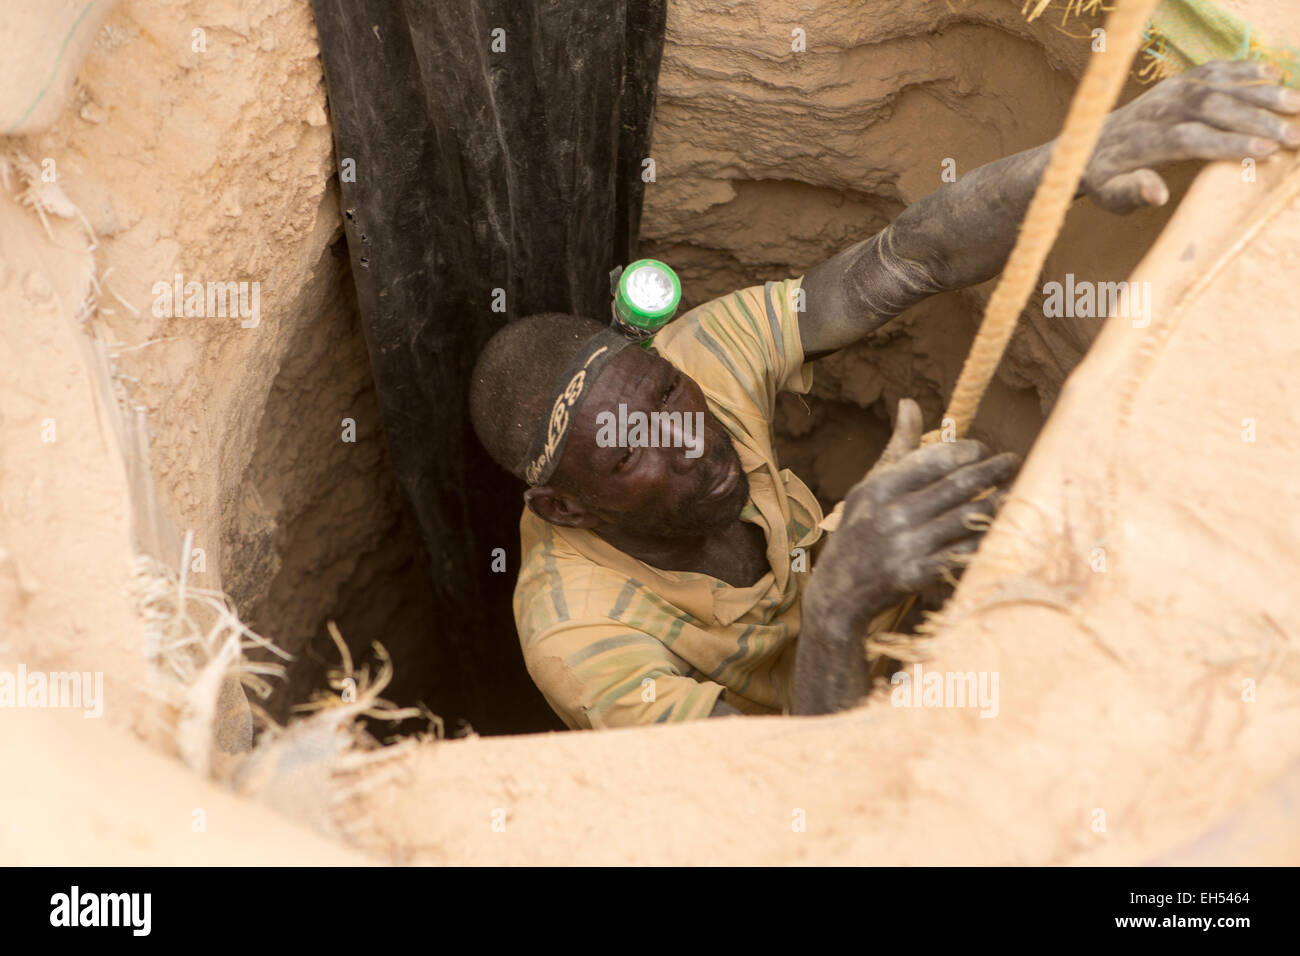 KOMOBANGAU, NIGER, : un minatore mette su una imbracatura per essere abbassato l'albero di ingresso di un grezzo miniera d'oro. Foto Stock